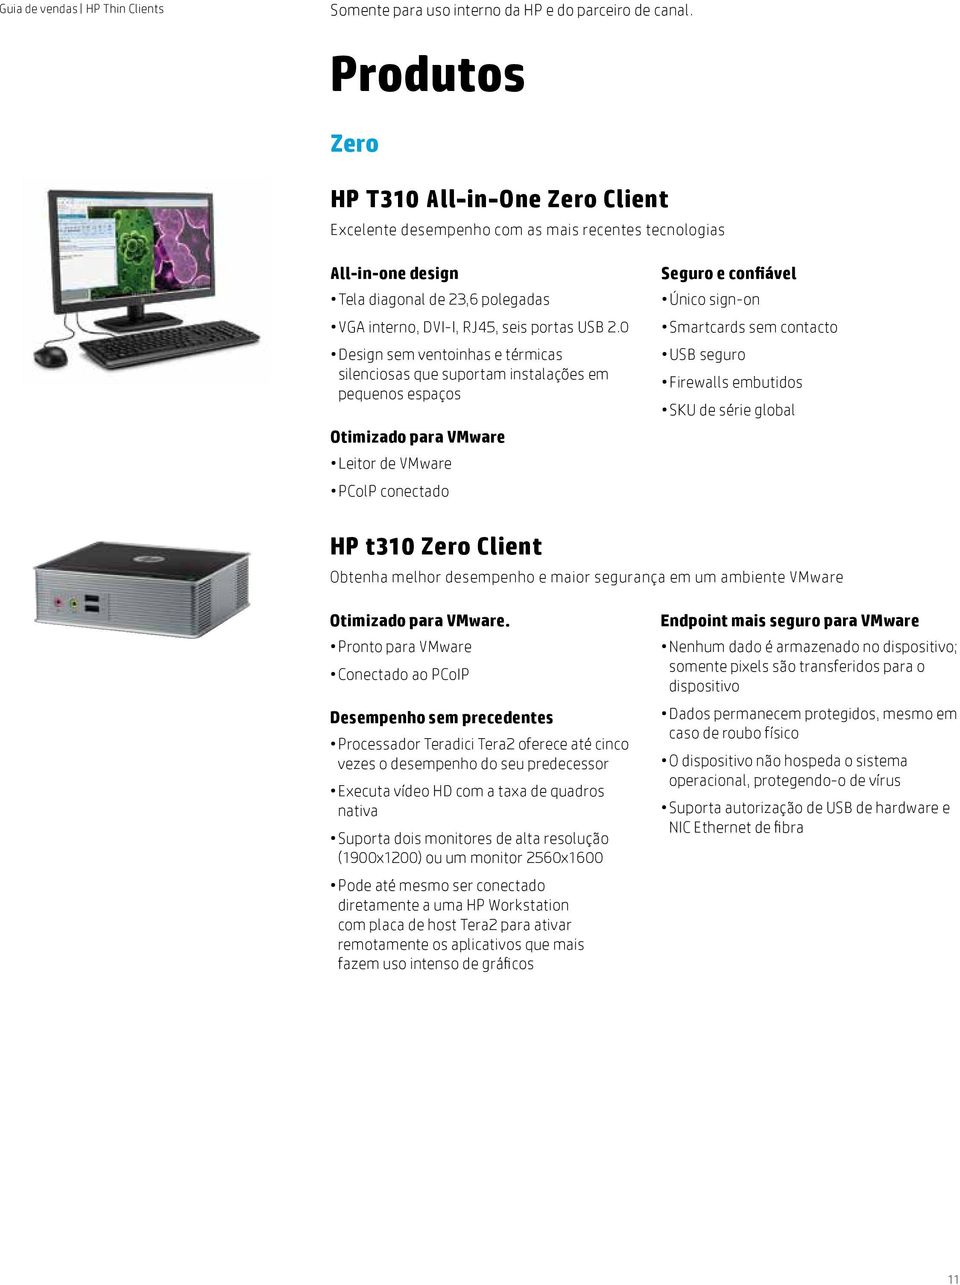 contacto USB seguro Firewalls embutidos SKU de série global HP t310 Zero Client Obtenha melhor desempenho e maior segurança em um ambiente VMware Otimizado para VMware.